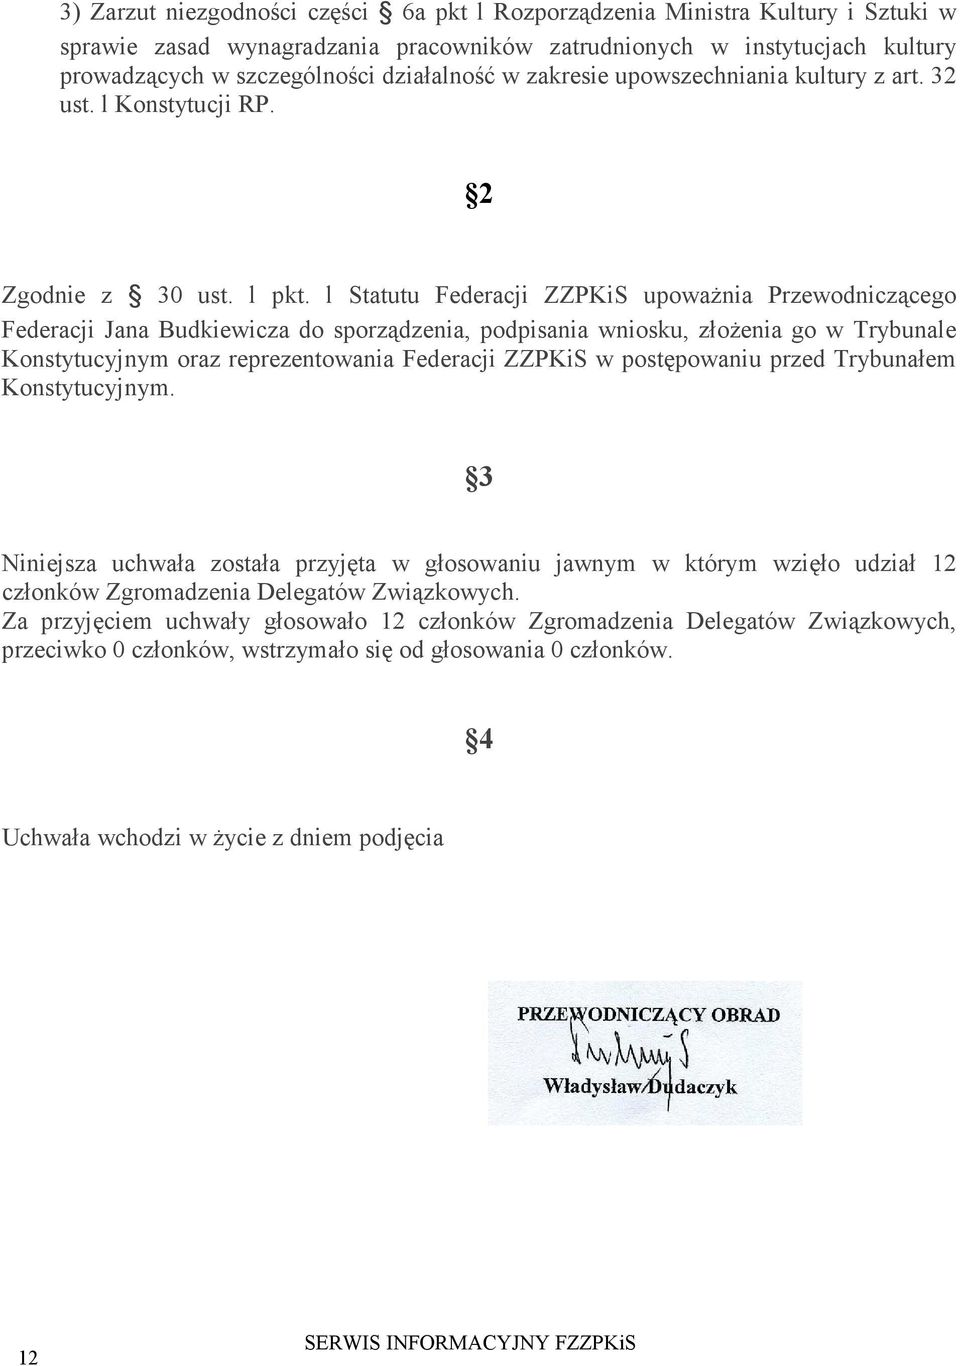 l Statutu Federacji ZZPKiS upowaŝnia Przewodniczącego Federacji Jana Budkiewicza do sporządzenia, podpisania wniosku, złoŝenia go w Trybunale Konstytucyjnym oraz reprezentowania Federacji ZZPKiS w